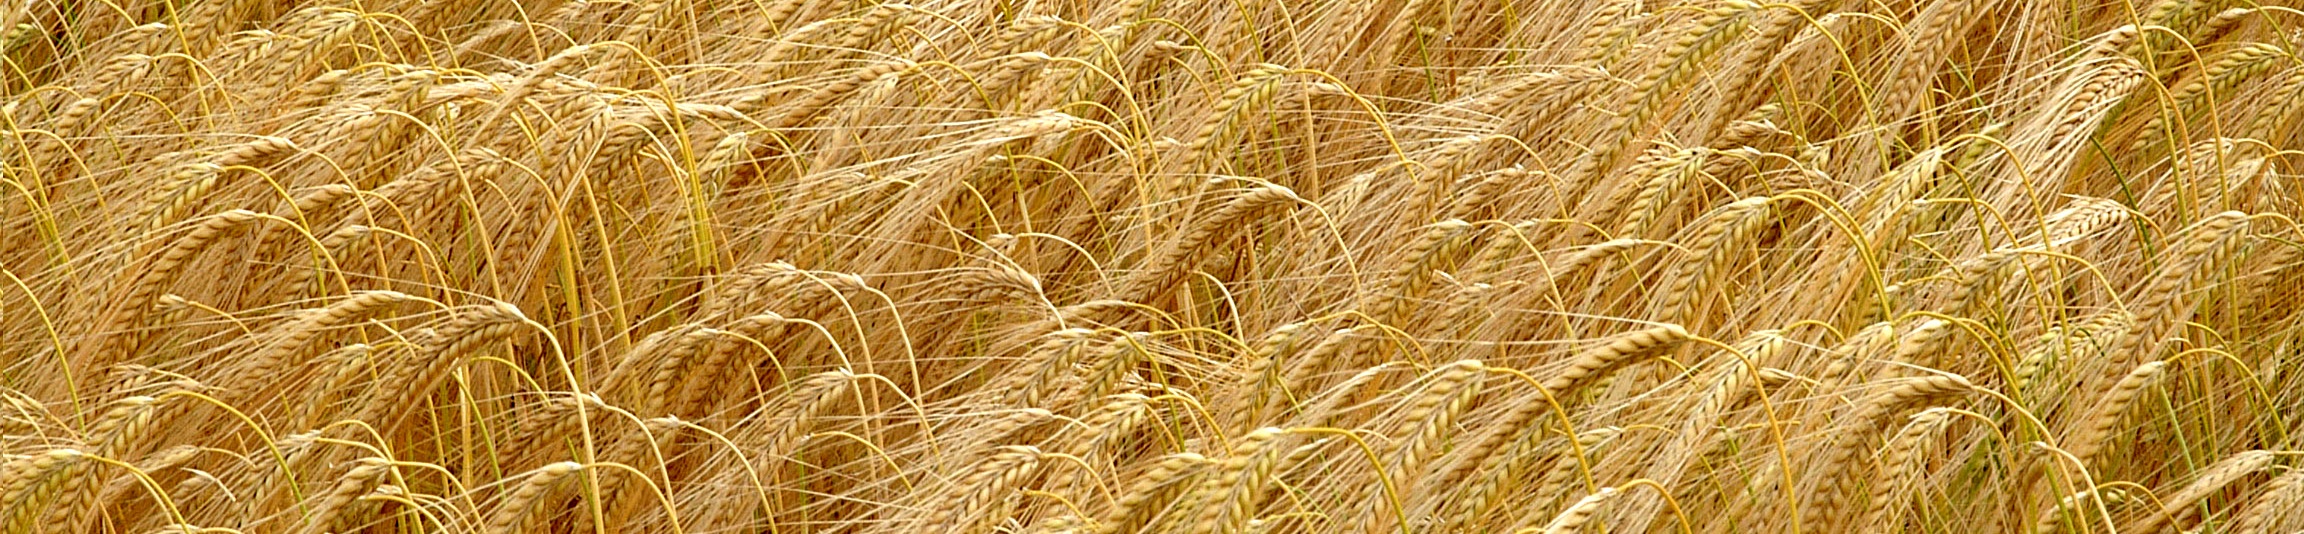 golden barley. Copyright James Hutton Institute